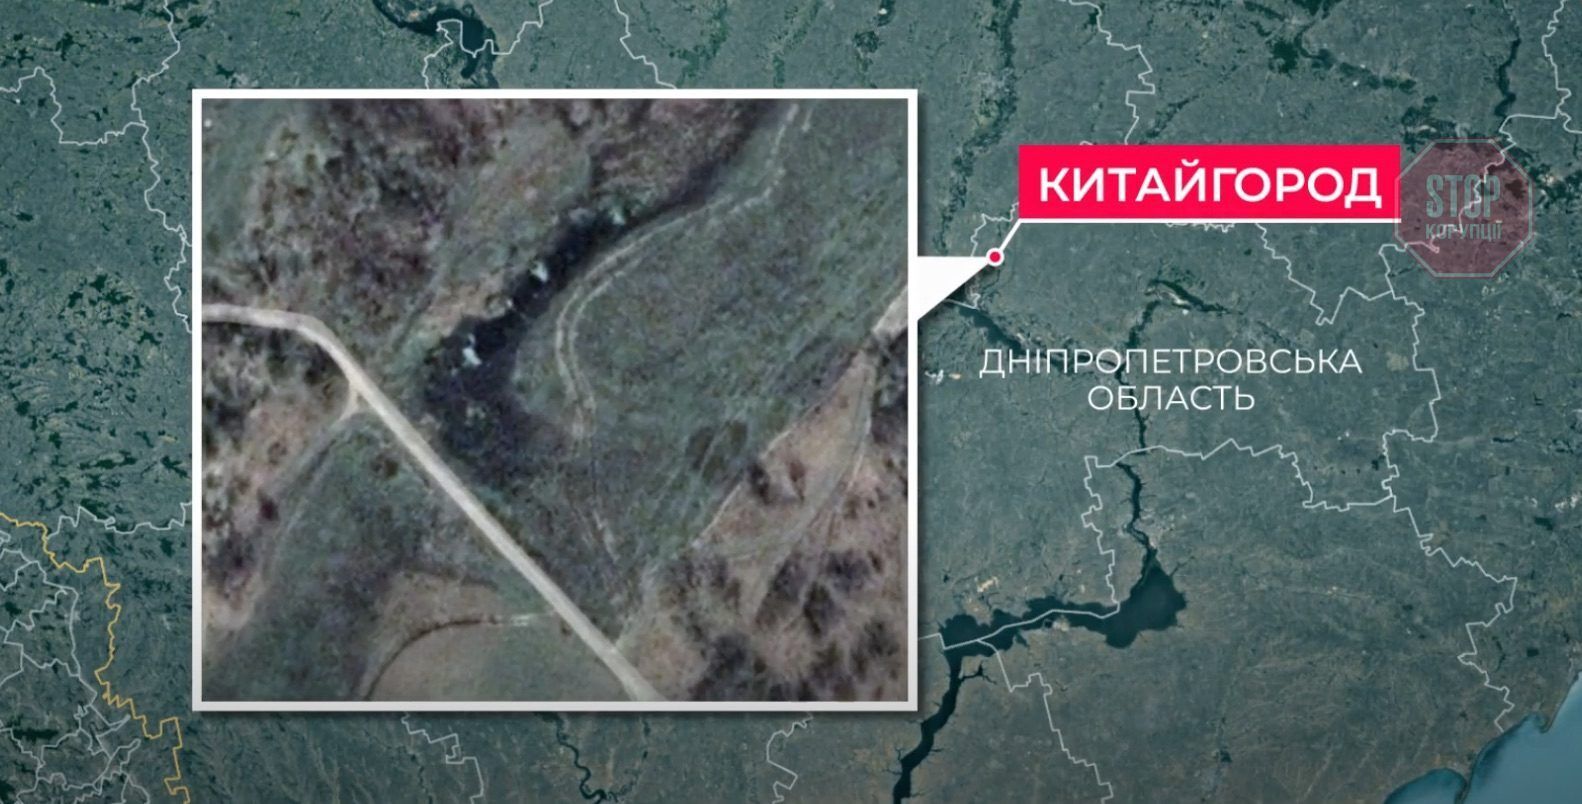  Найдорожчу дорогу України будують поблизу Китайгорода Фото: скриншот